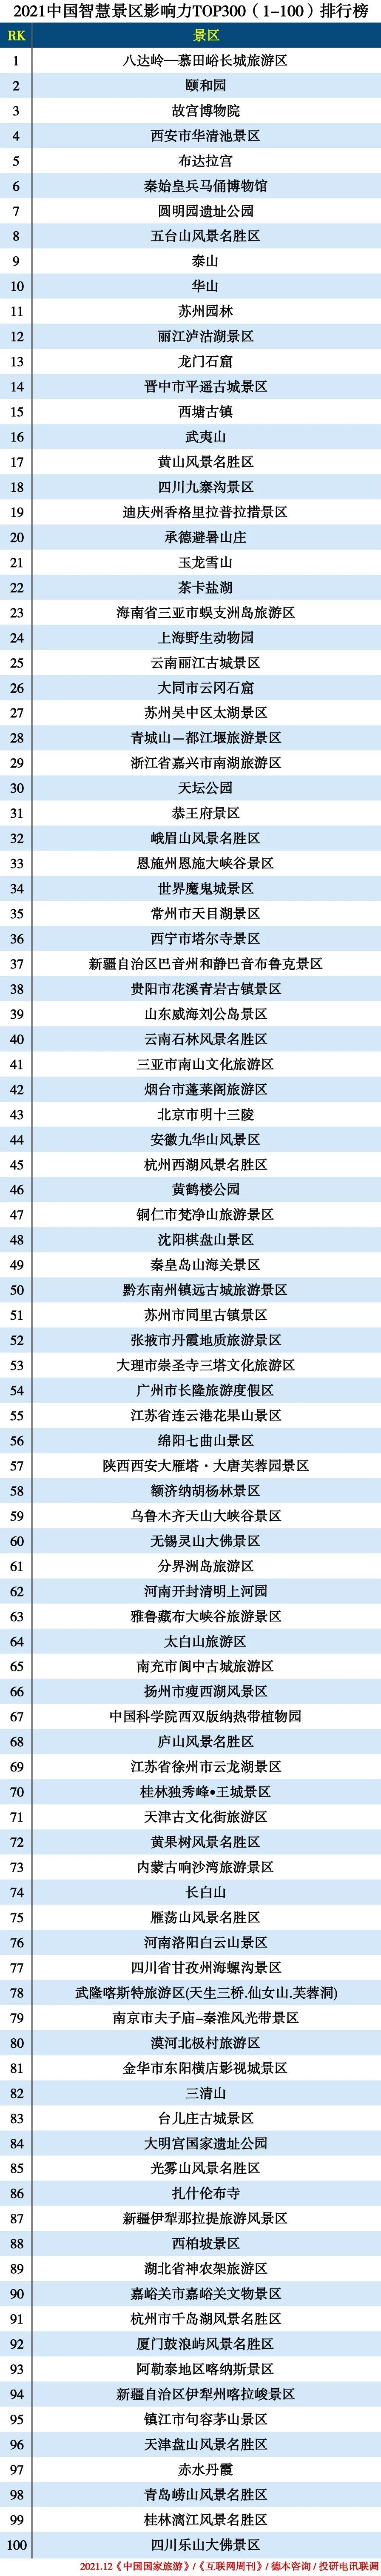 2021中国智慧景区TOP300—1-100.jpg